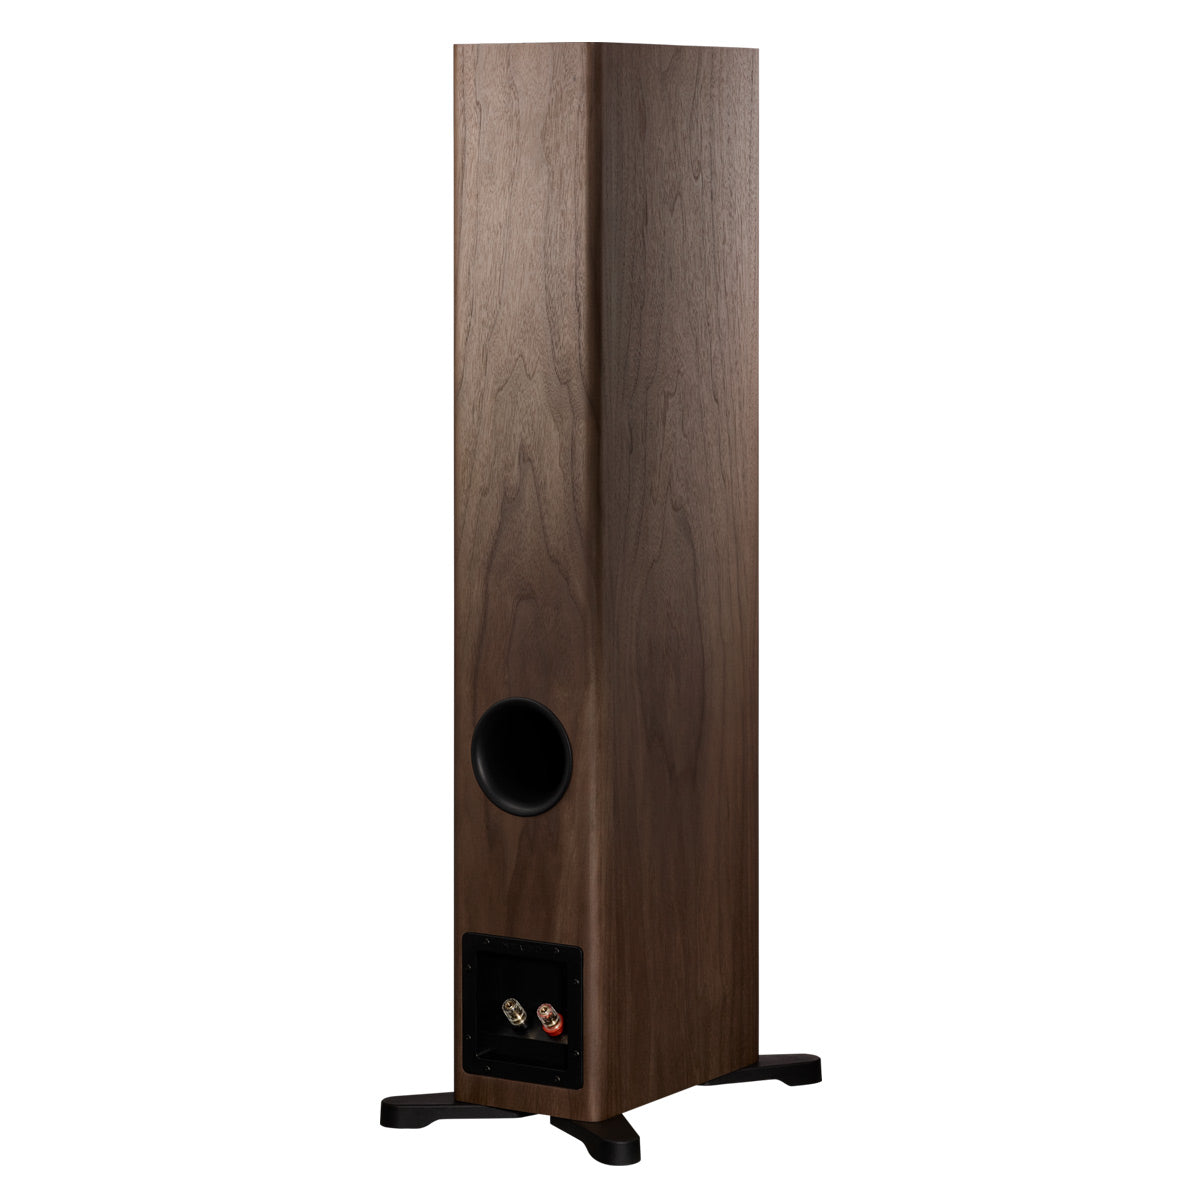 Dynaudio Evoke 30 Floorstanding Speakers - Pair (Walnut Wood)